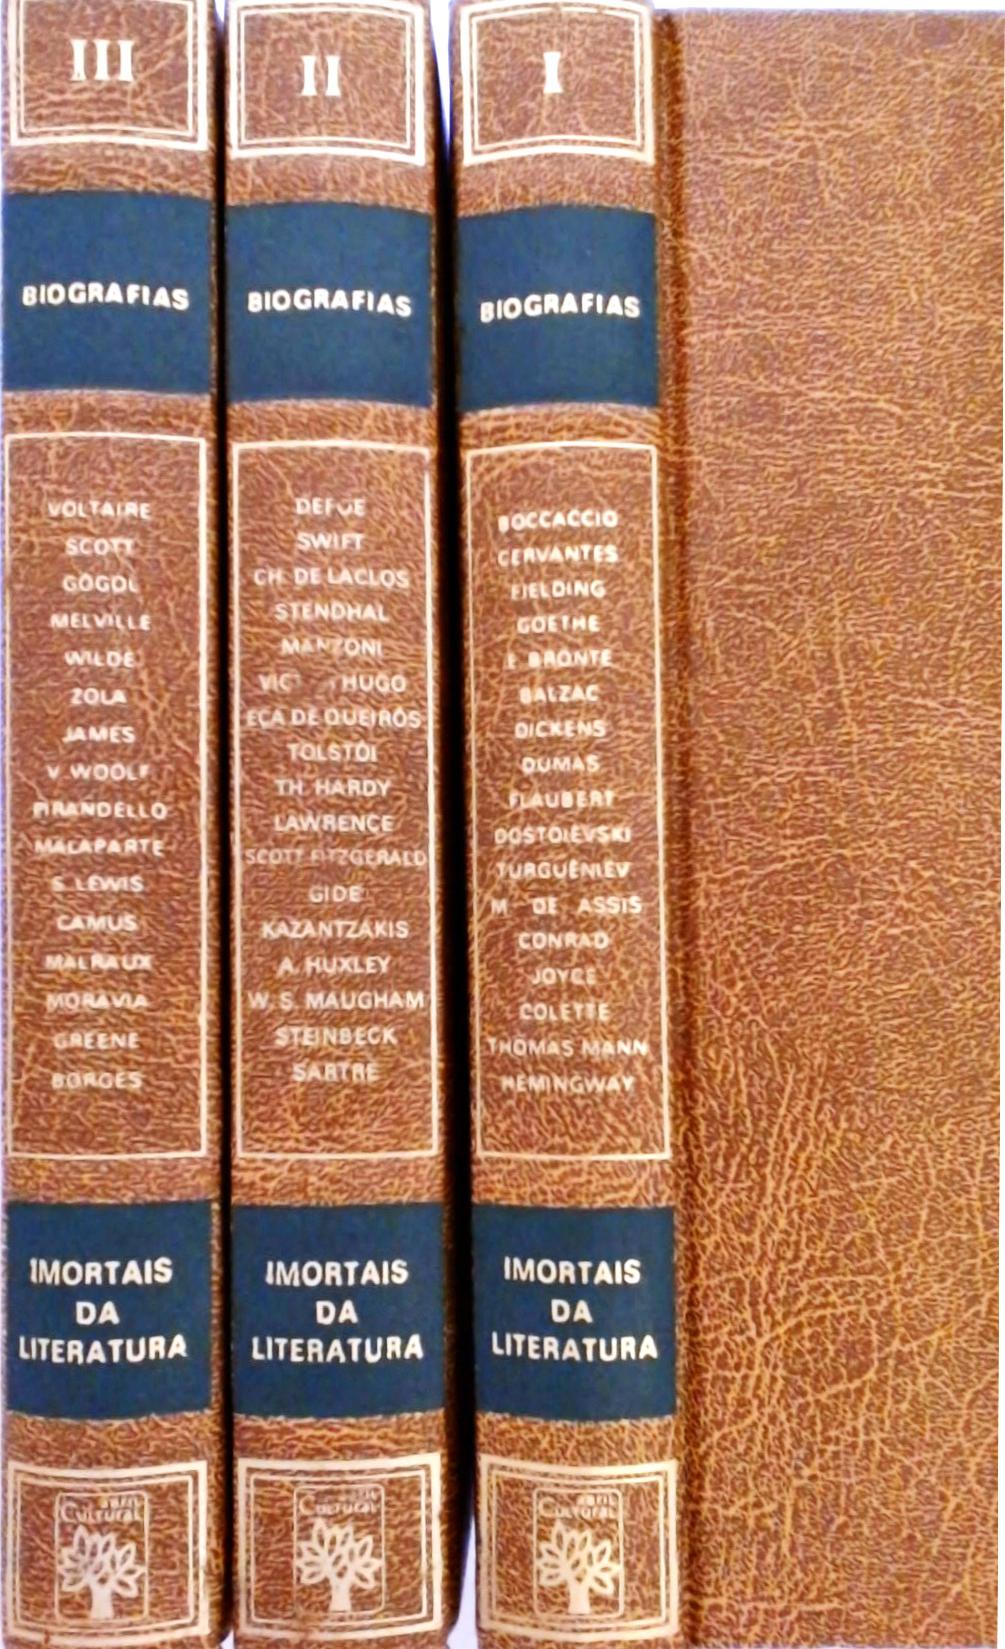 Os Imortais da Literatura Universal - Biografias (Em 3 vols.)